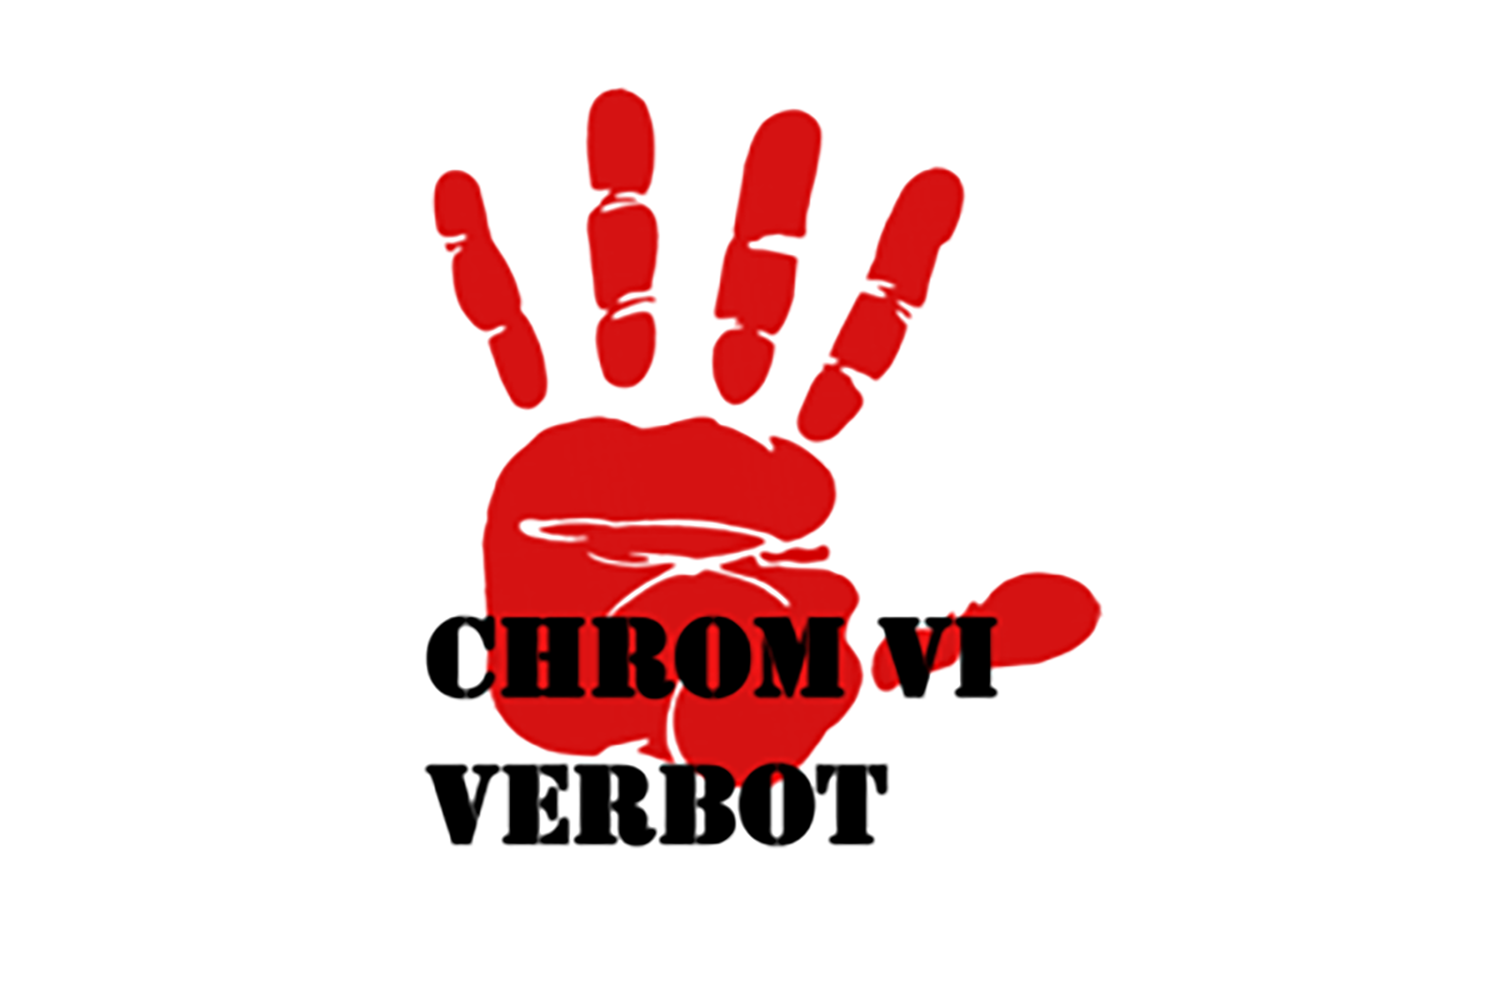 Chrom (VI) 6-Verbot – wir bieten Alternativen! - Löwen Härterei GmbH